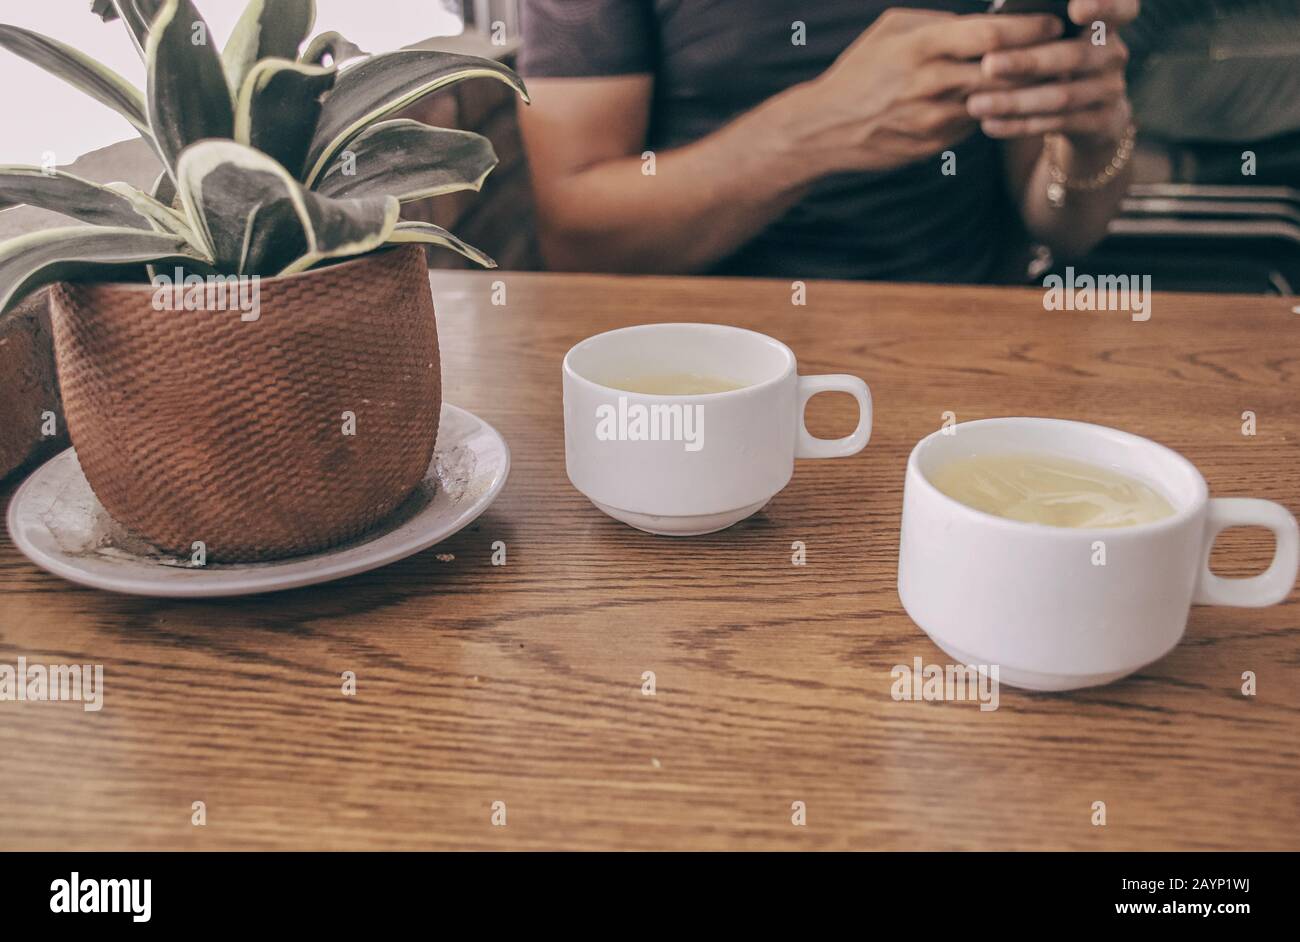 Foto concettuale che mostra due tazze di tè e una persona che utilizza il telefono per mostrare gli effetti della tecnologia, dei social media e di Internet nella lif quotidiana Foto Stock